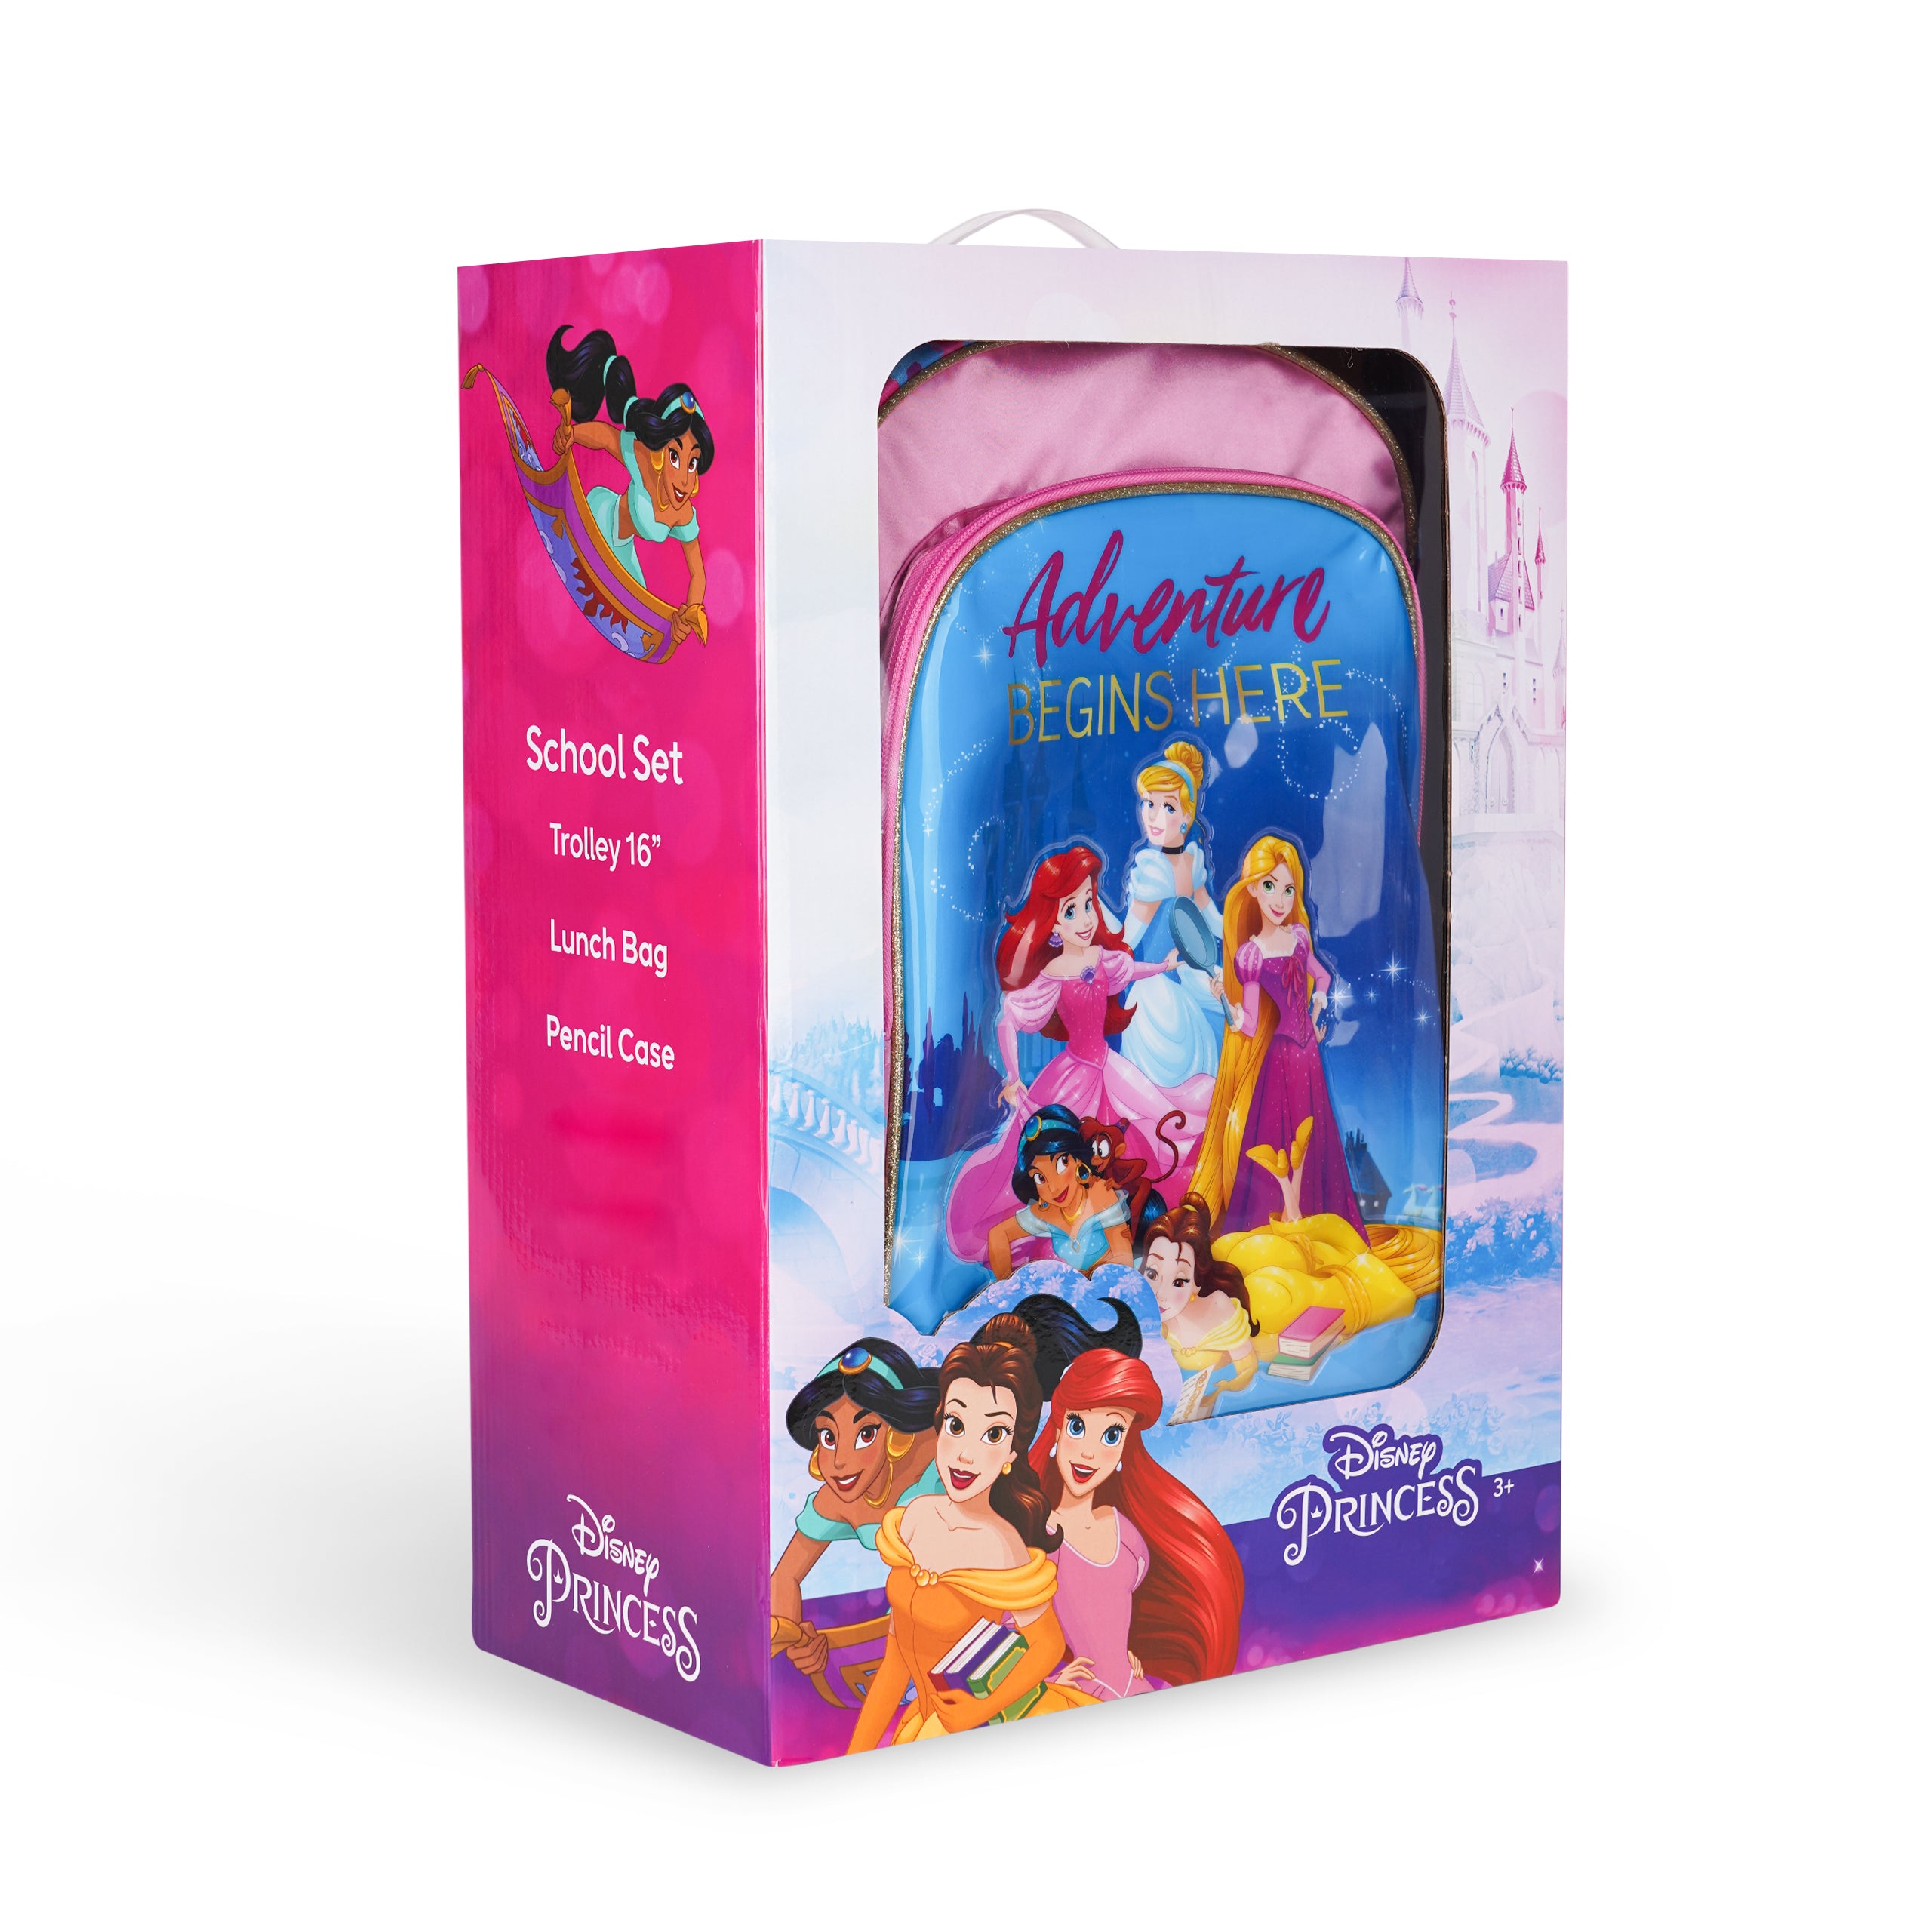 Disney Princess Adventure Begins Here 3in1 Trolley Box set 18"